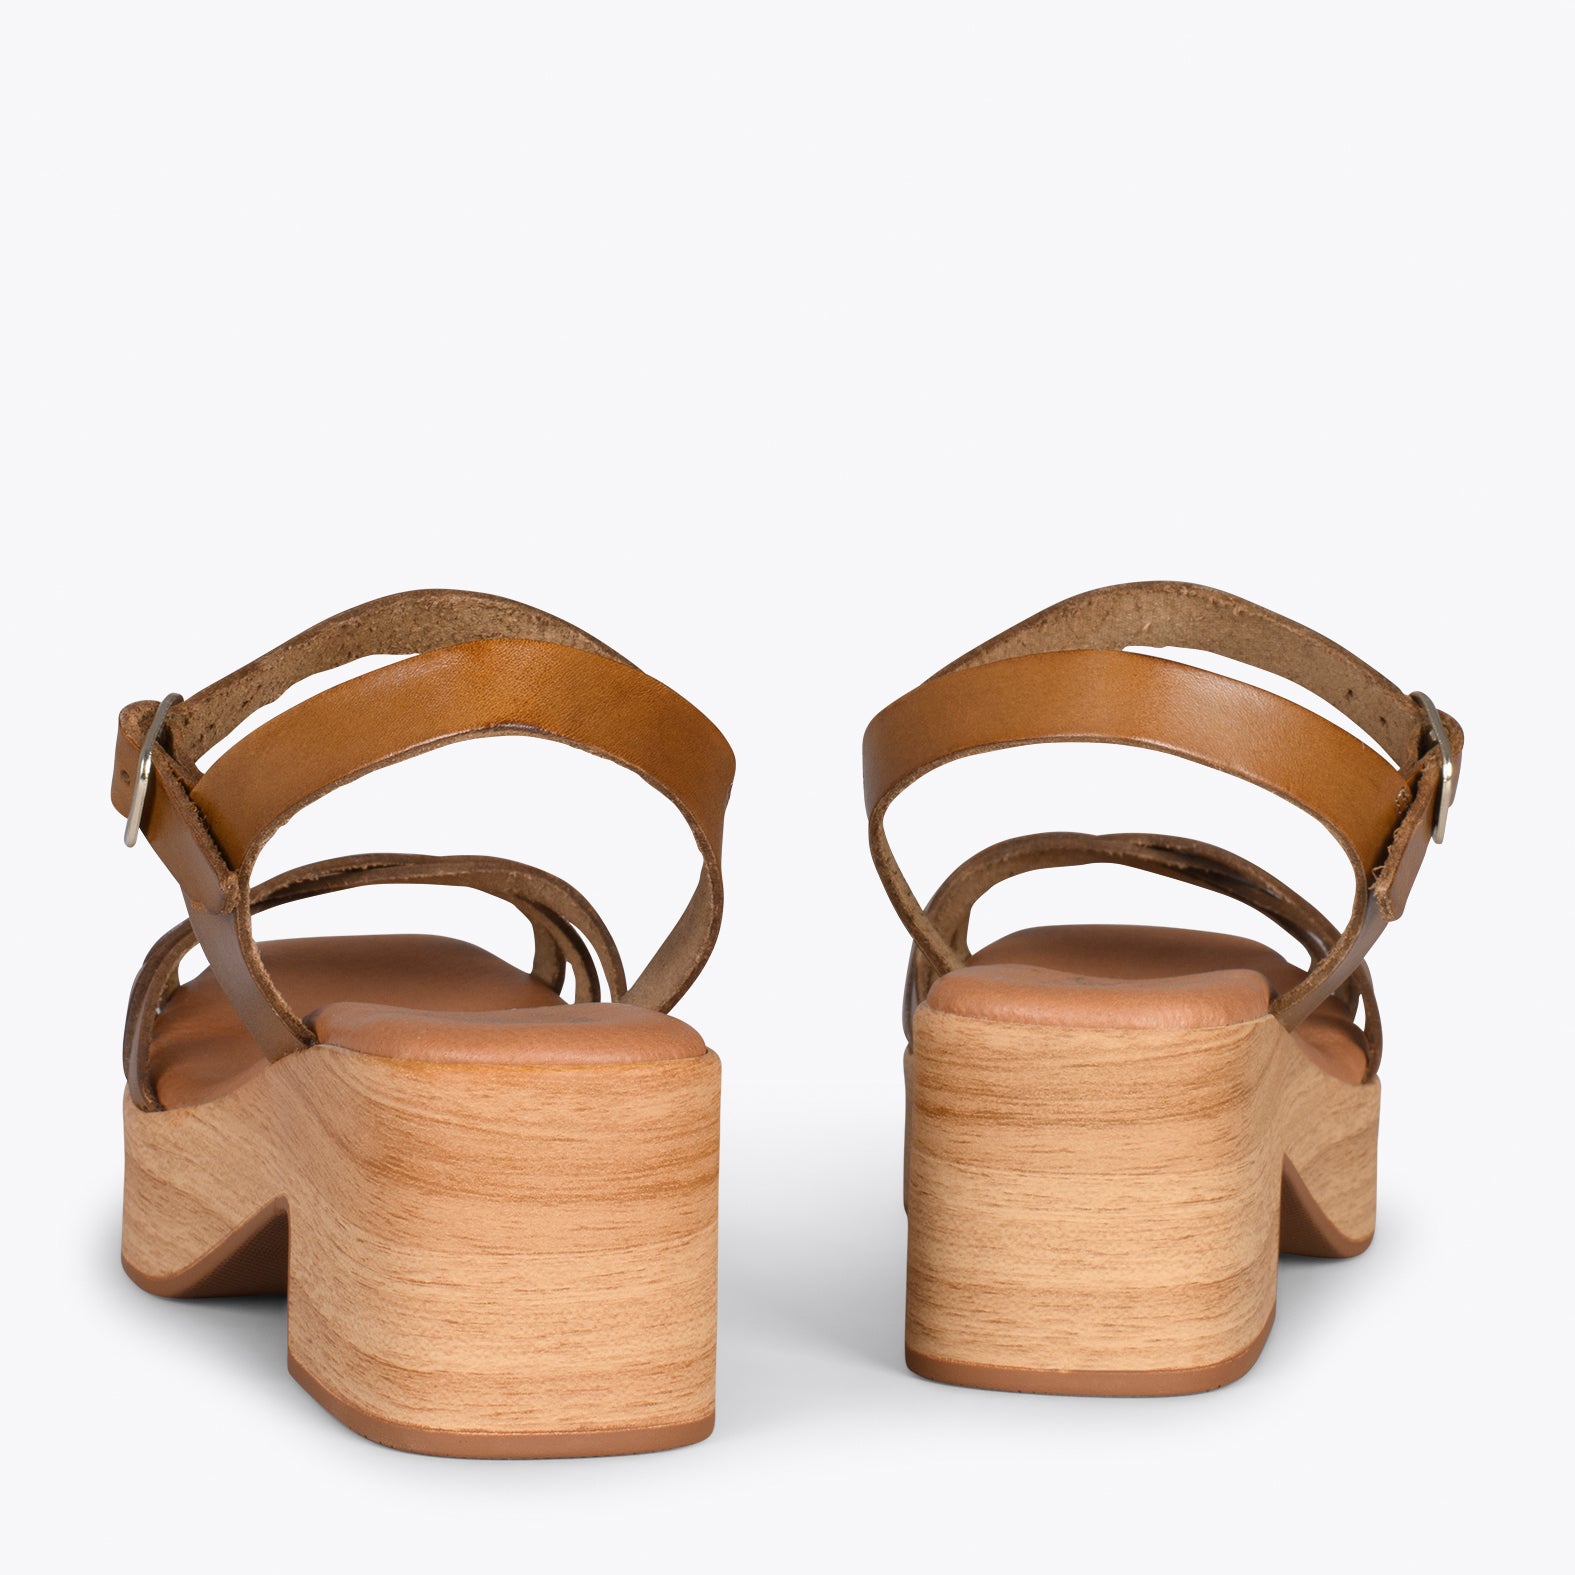 WOOD – Sandalias imitación madera con tiras CAMEL